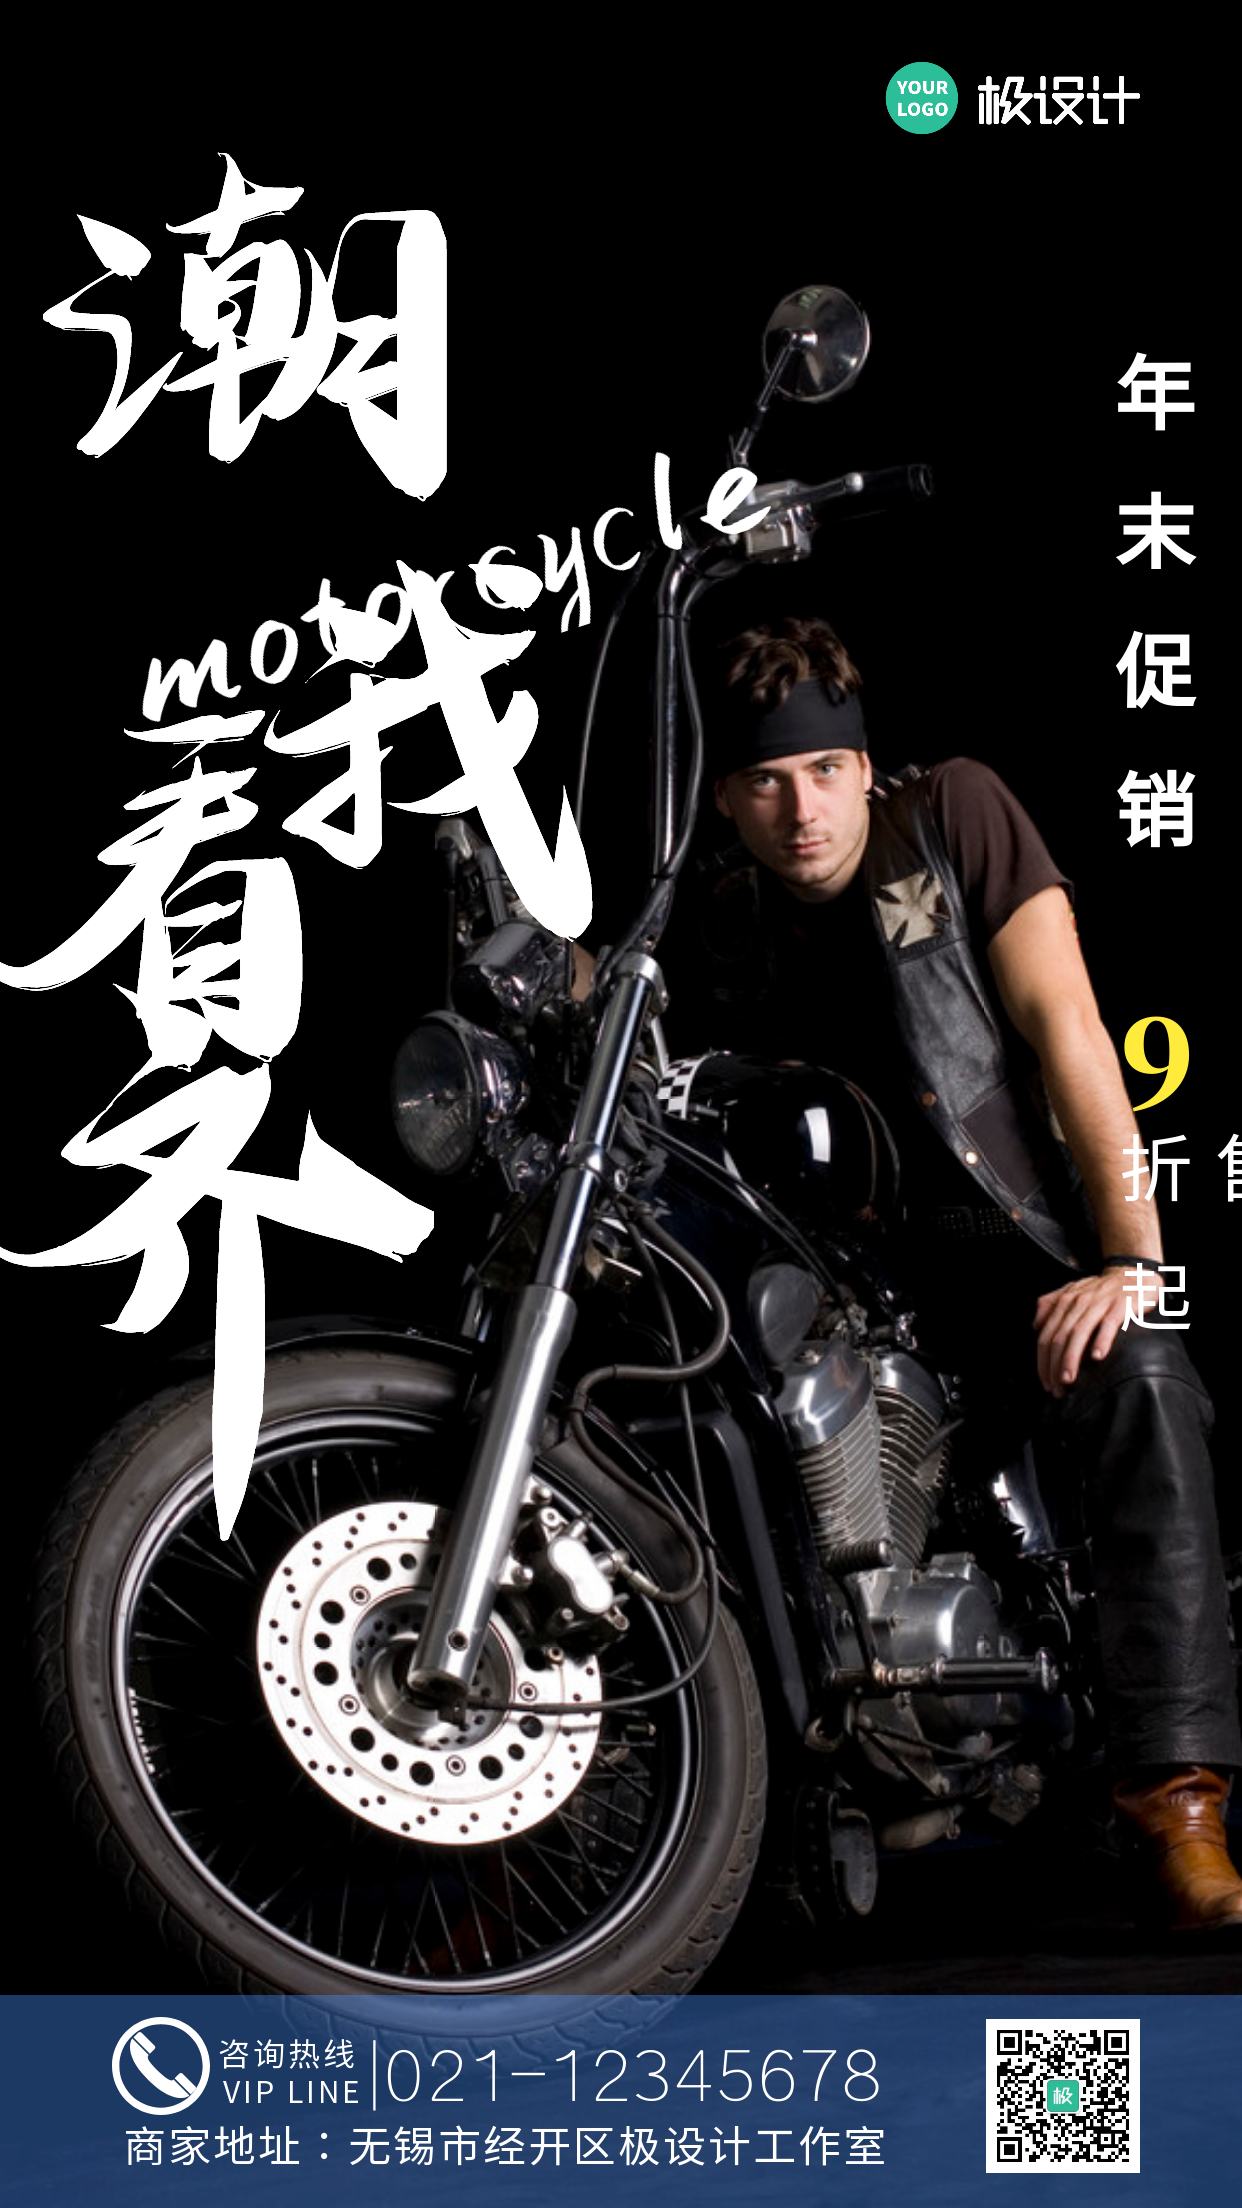 年末摩托车促销摄影图海报